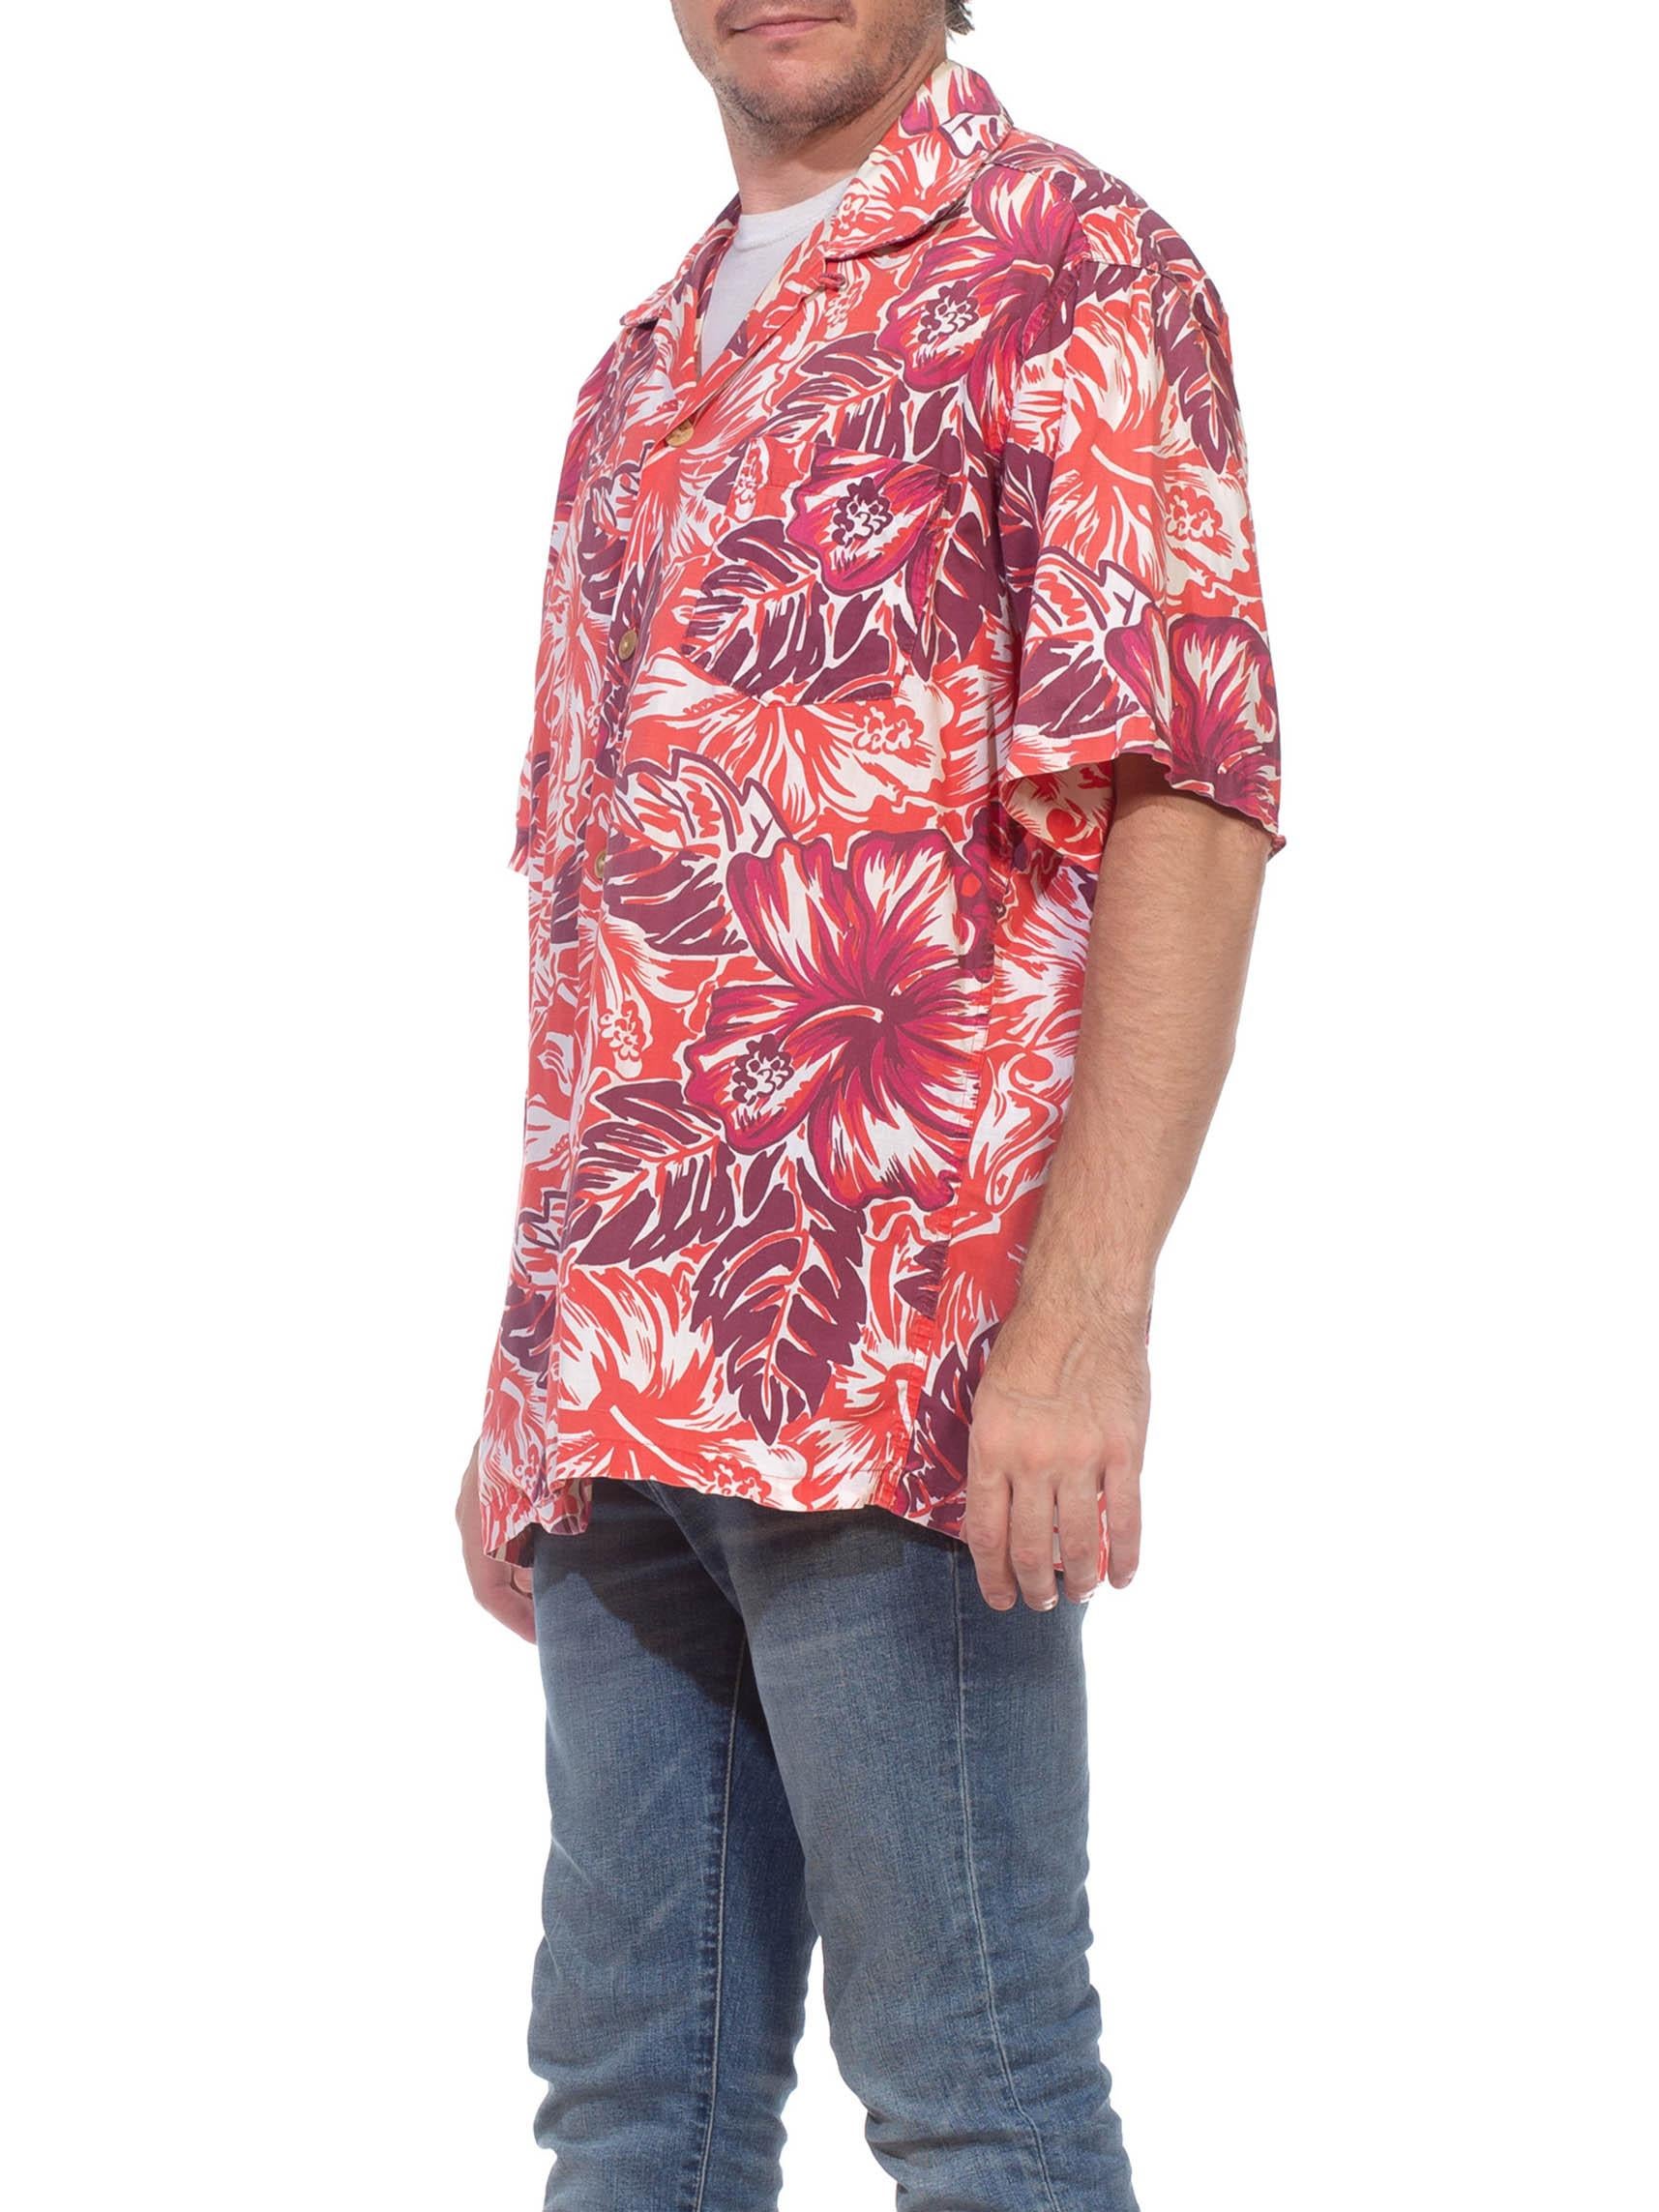 maroon hawaiian shirt